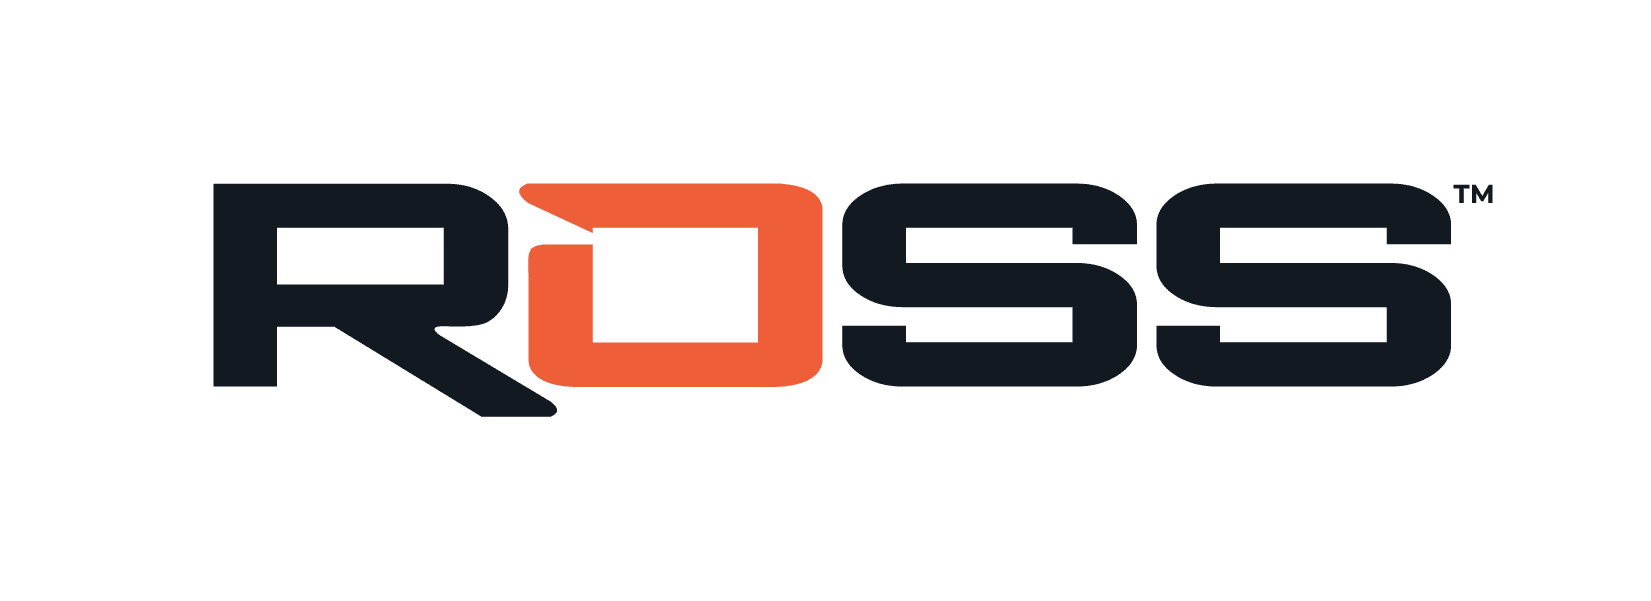 ROSS_logo_2022_new